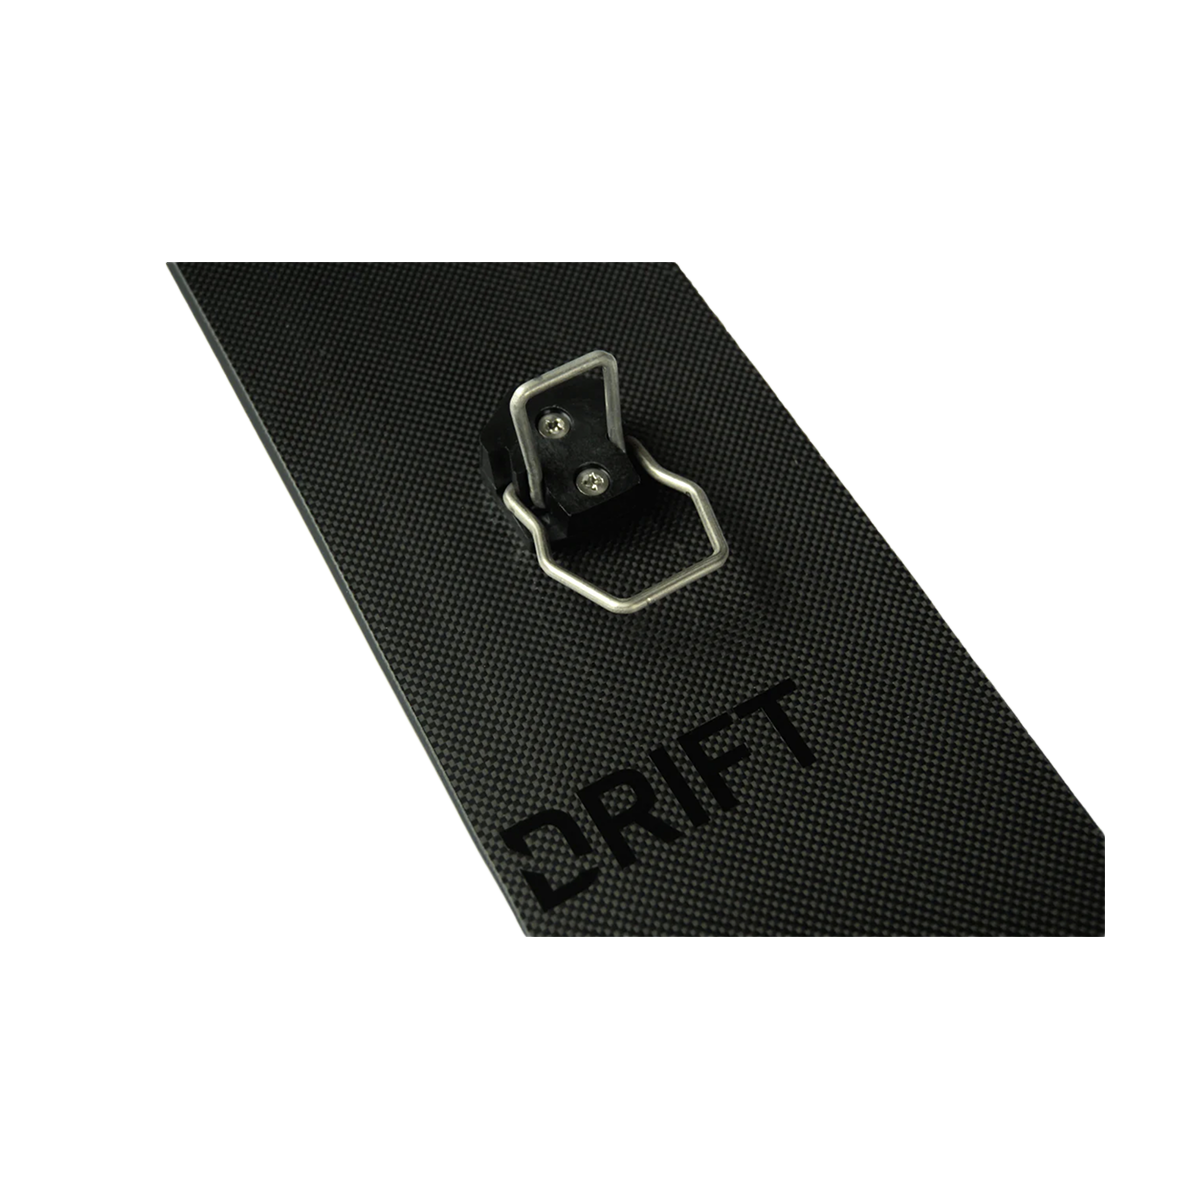 Drift Carbon Nylon Skins Drift Boards